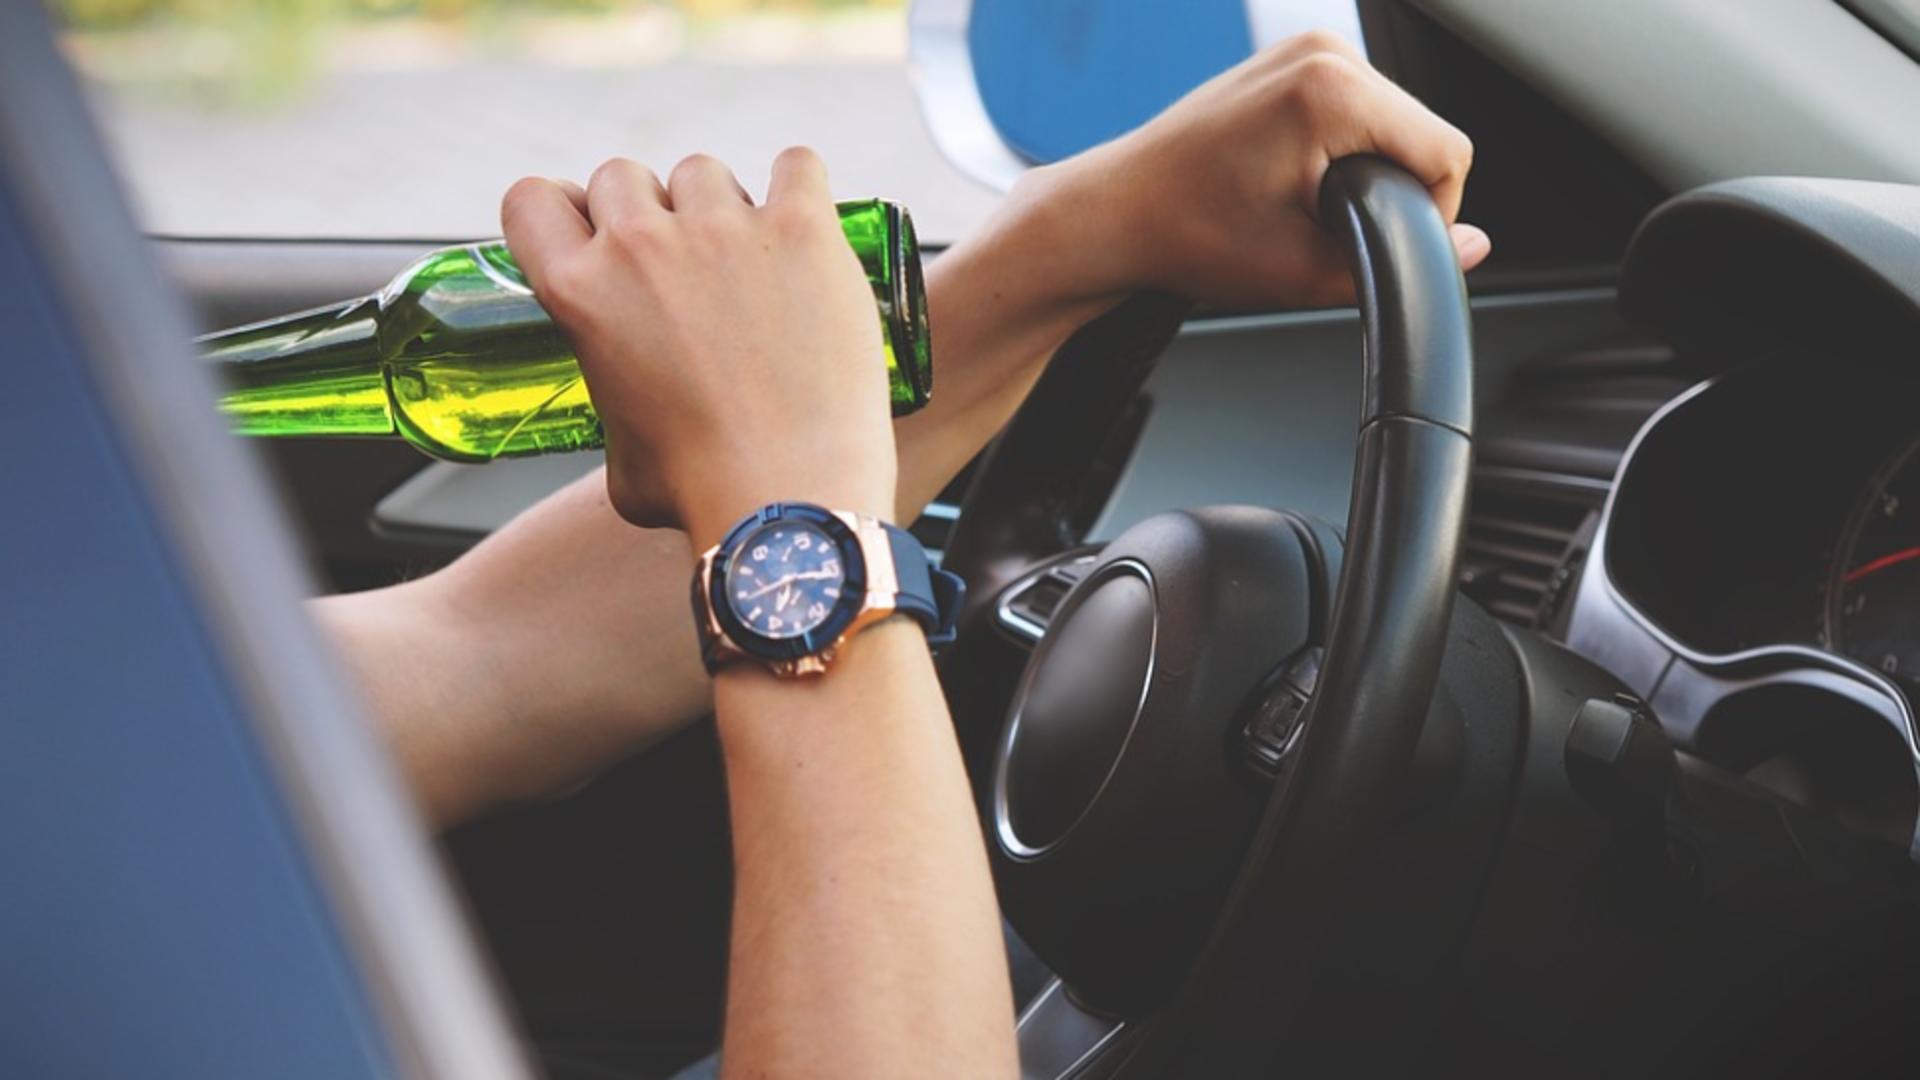 La cât timp după ce ai consumat alcool te poți urca la volan, fără să riști sancțiuni legale